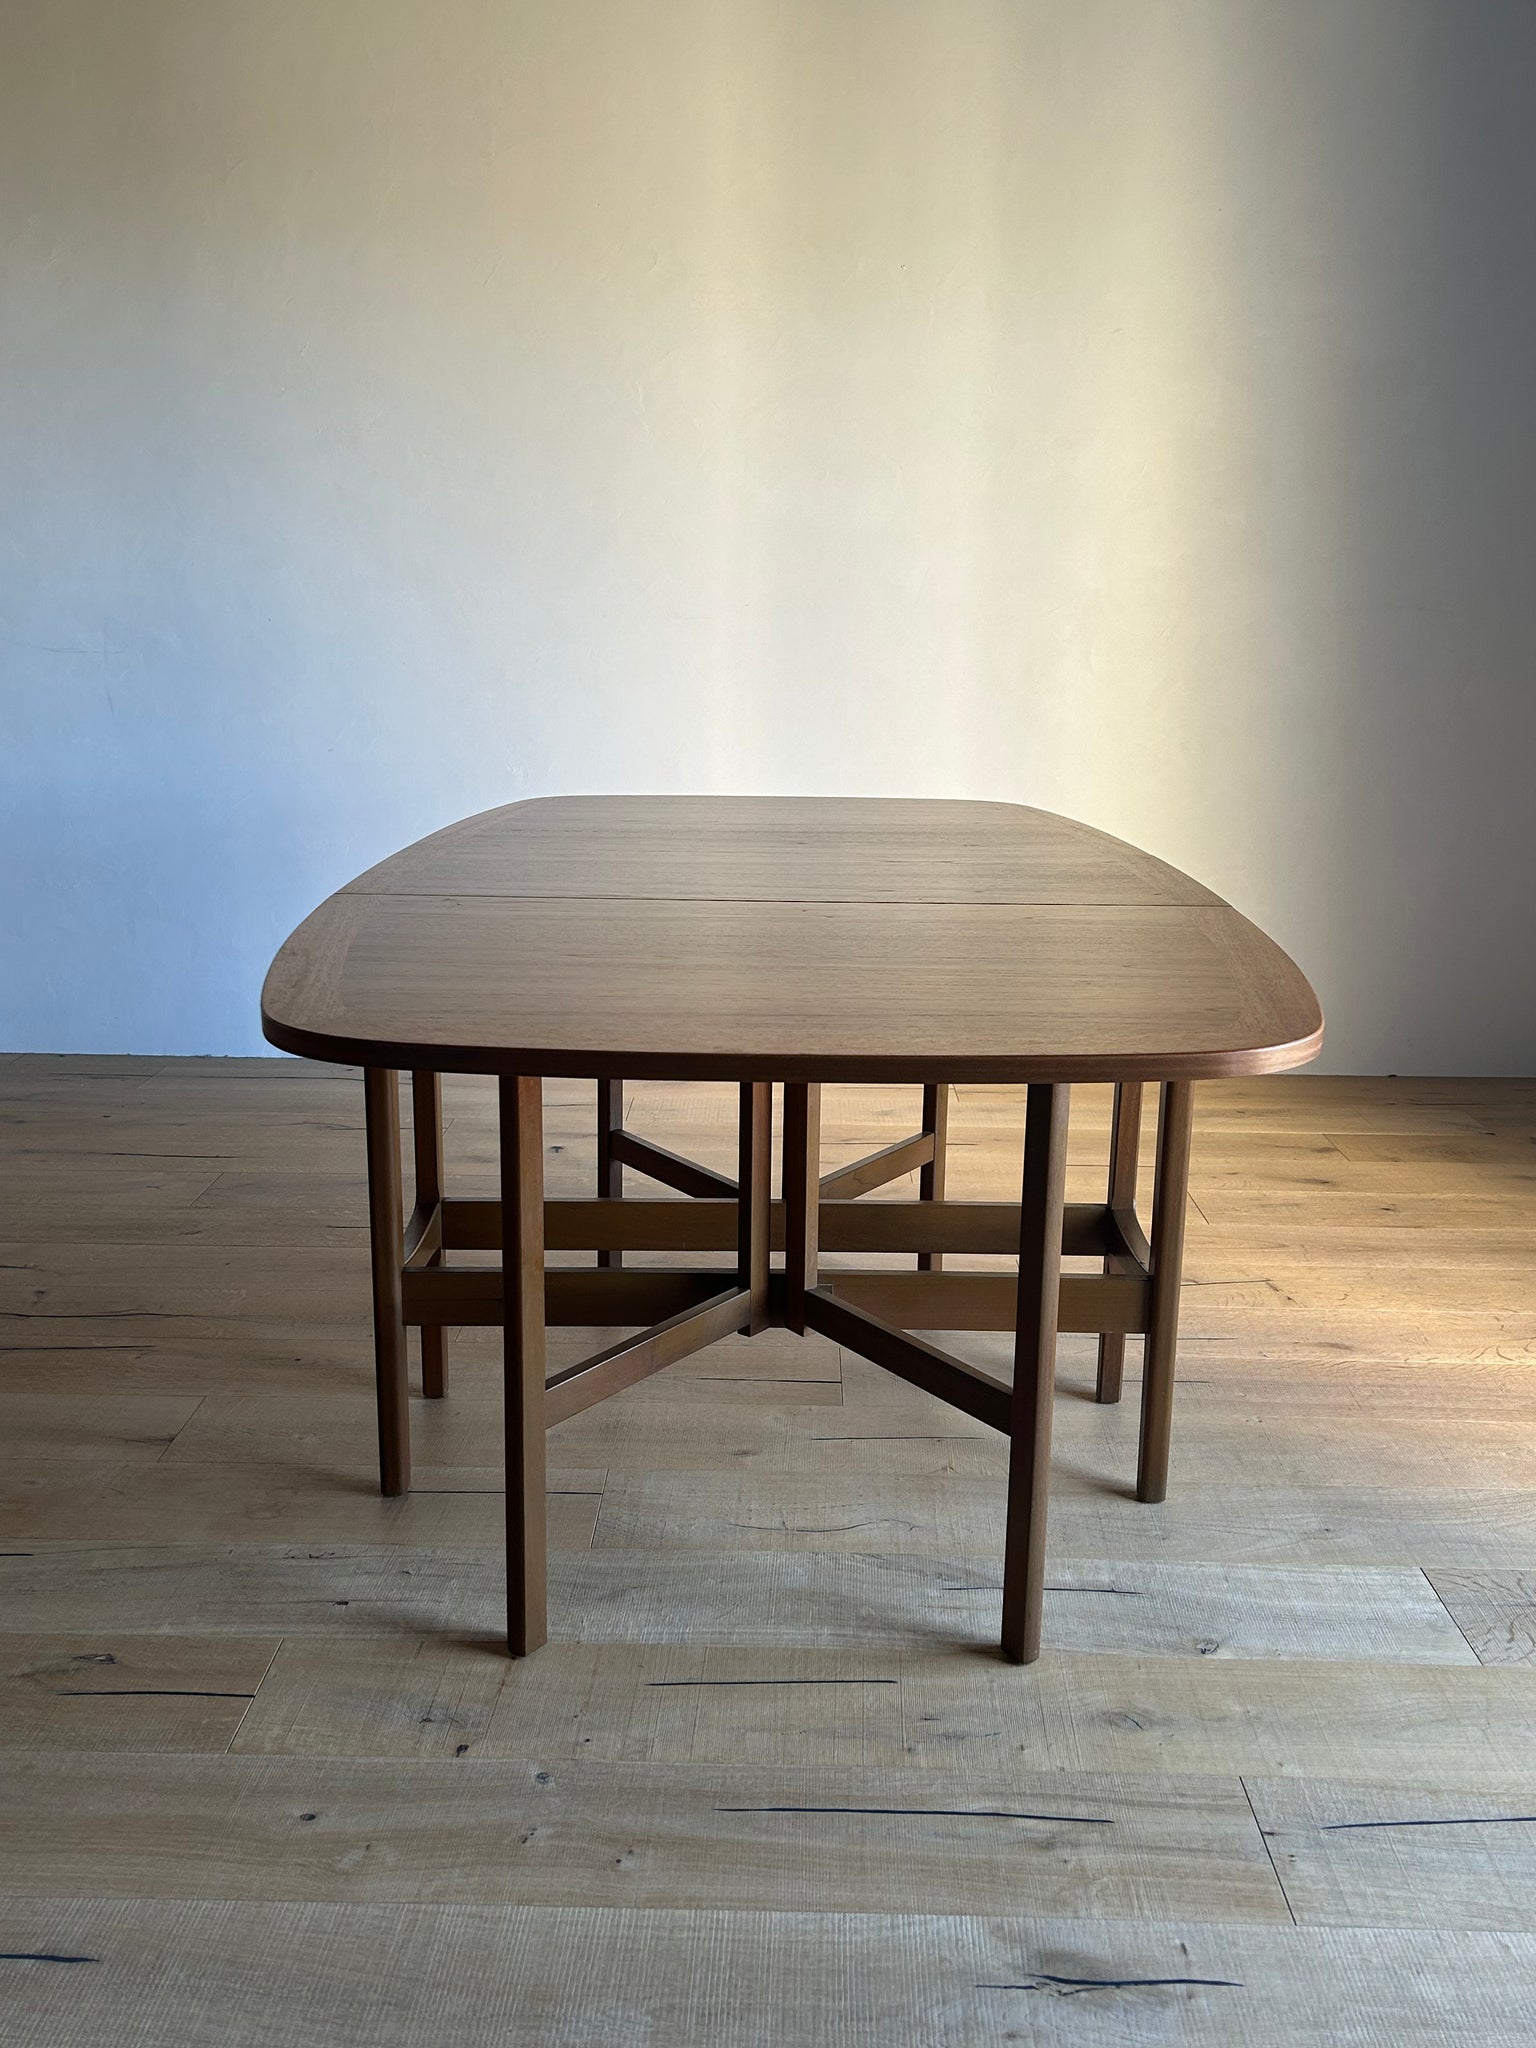 ドロップリーフテーブル / teak drop leaf table #0260 – SCOUT VINTAGE